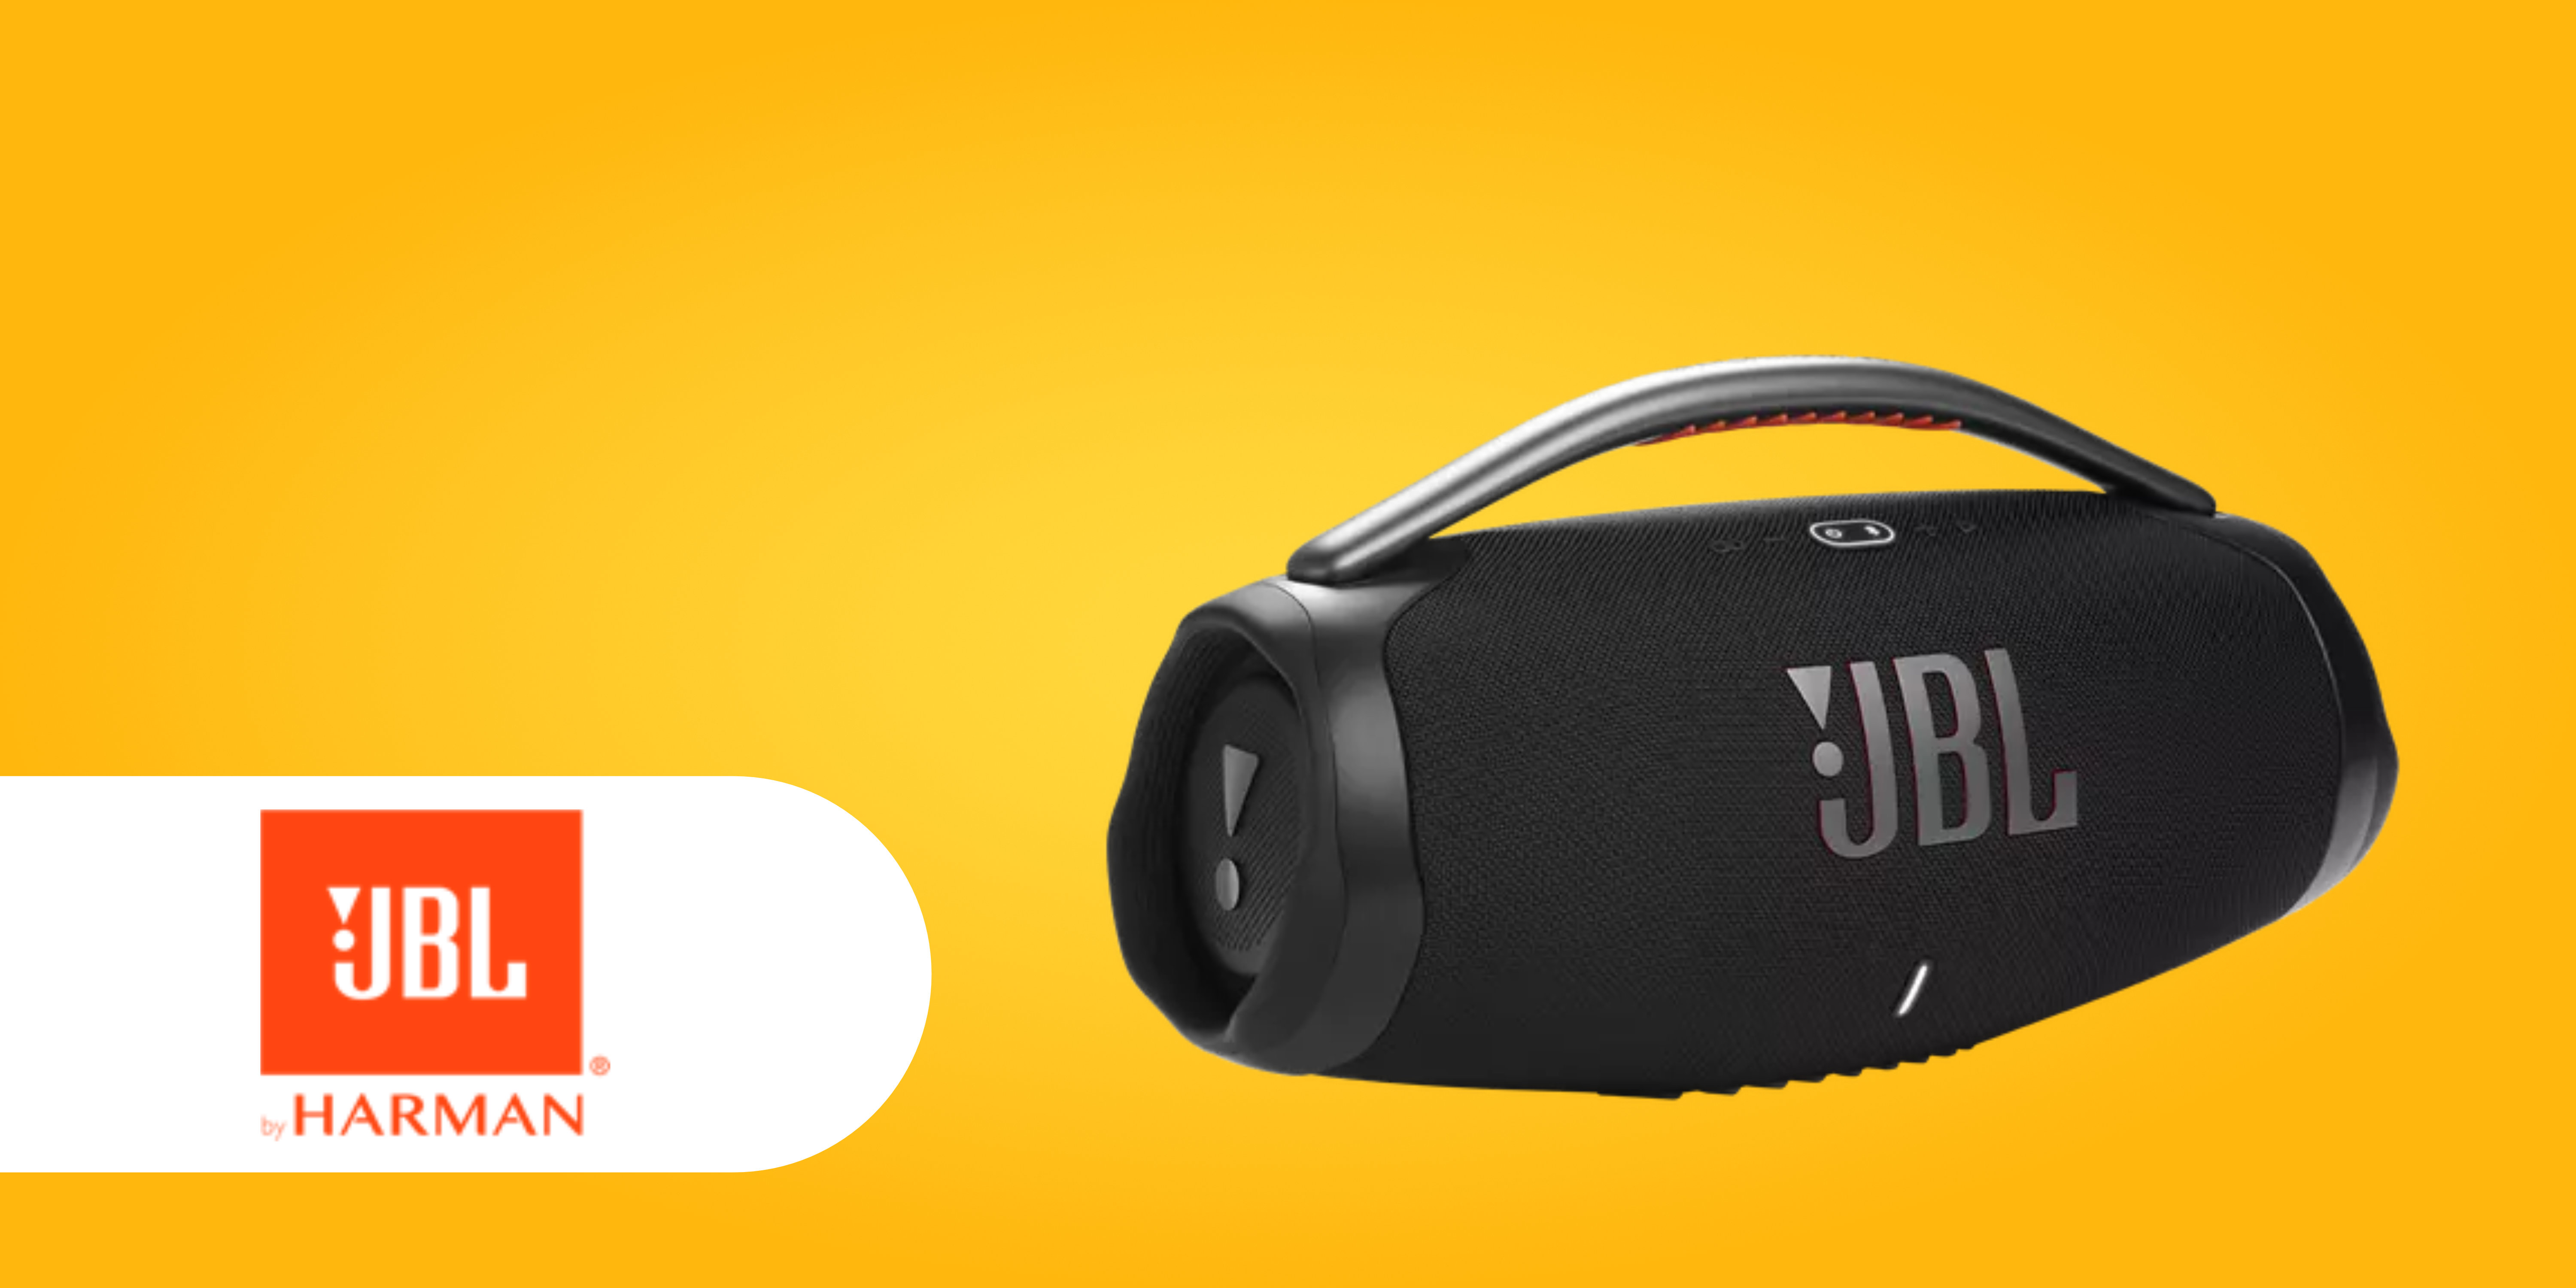 JBL JBL-Speaker Boombox 3 Neue erhältlich WLAN: Wi-Fi endlich mit